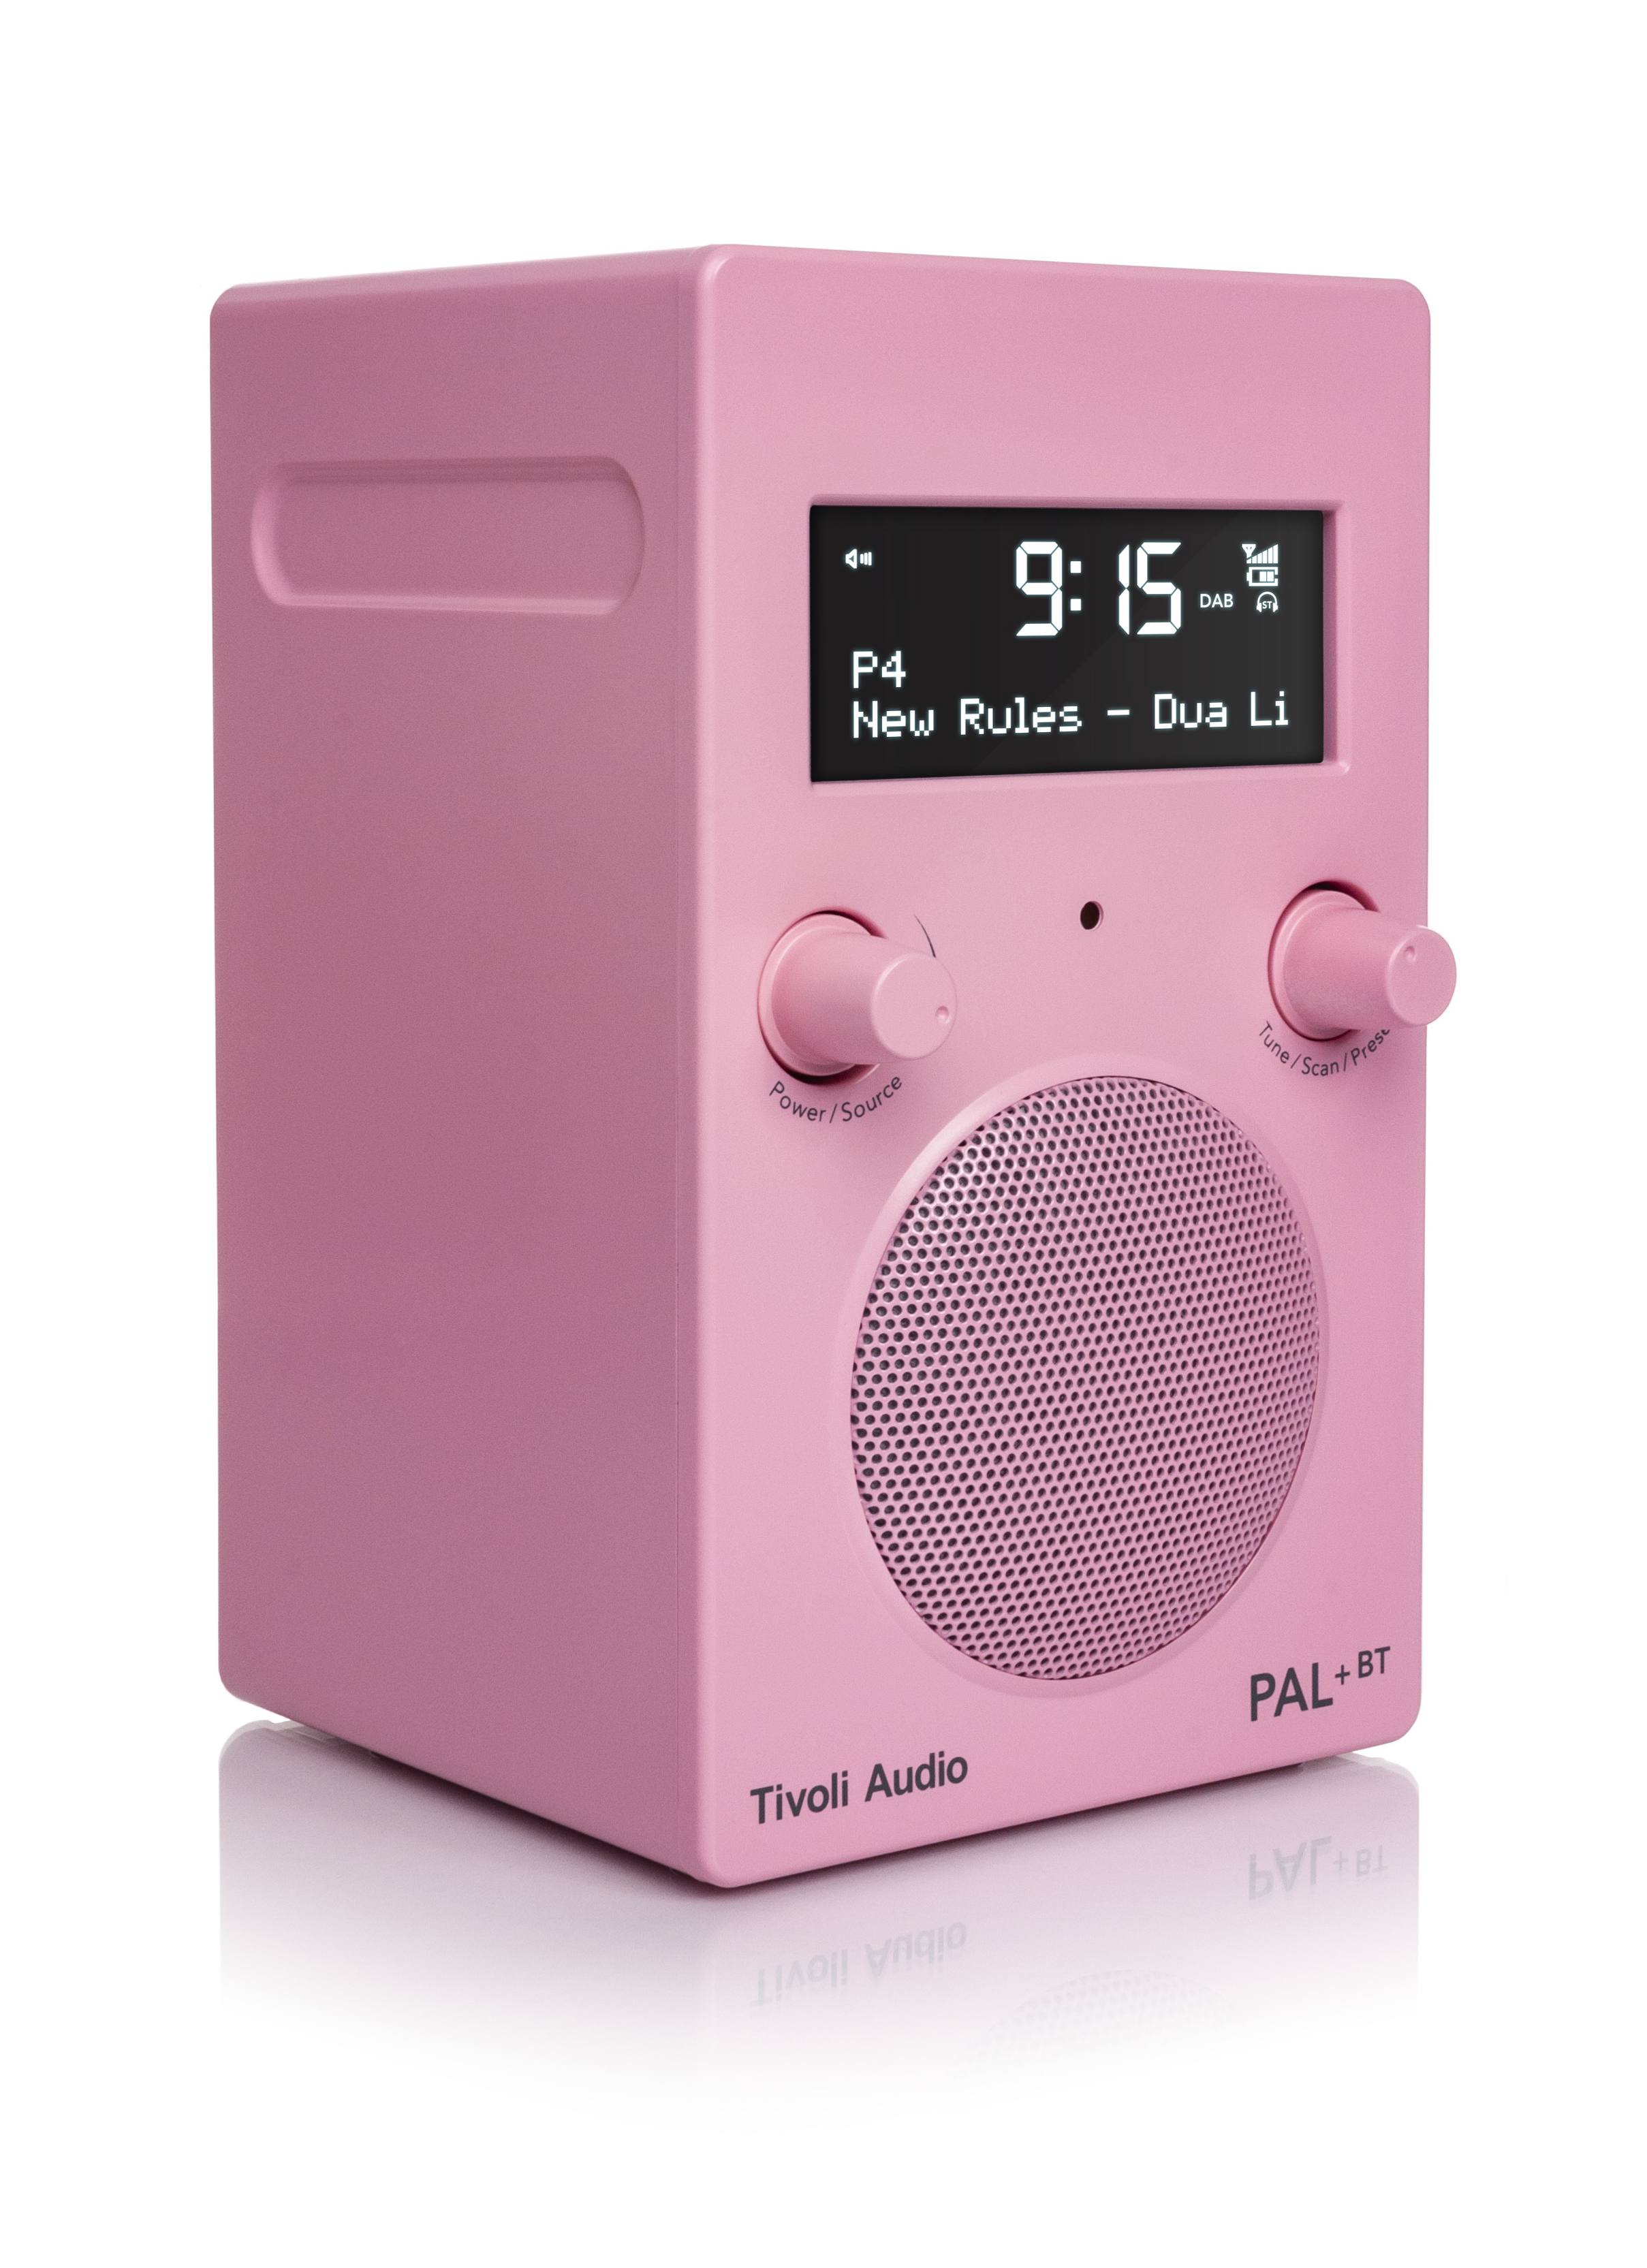 Bluetooth, BT PAL+ TIVOLI AUDIO DAB+, Radio, FM, DAB+, Rosa DAB+